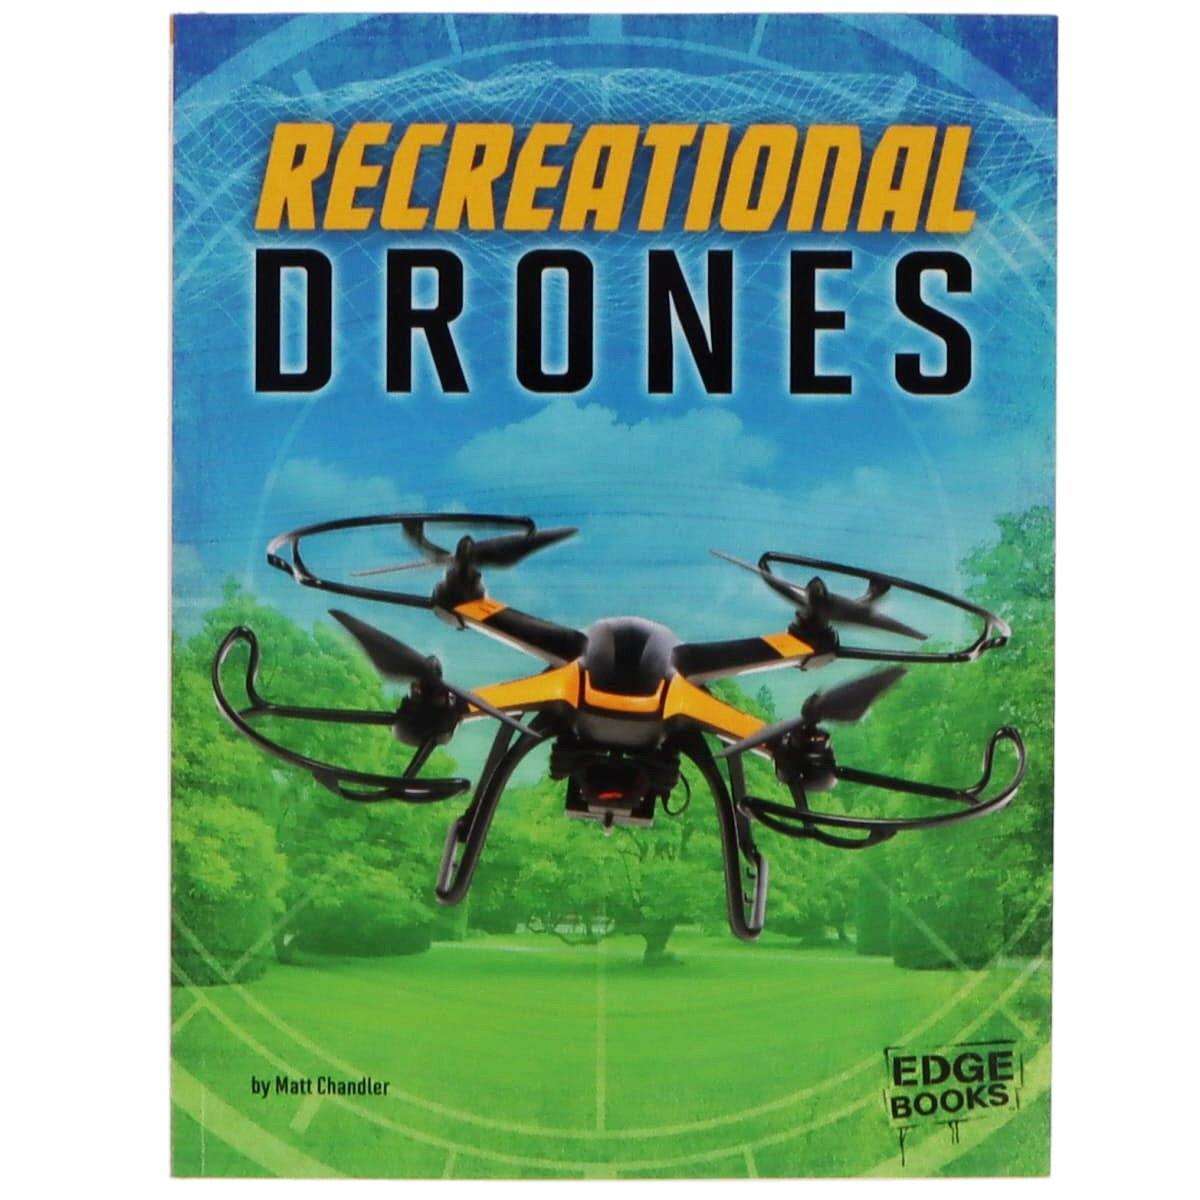 Capstone Recreational Drones by Matt Chandler - PilotMall.com